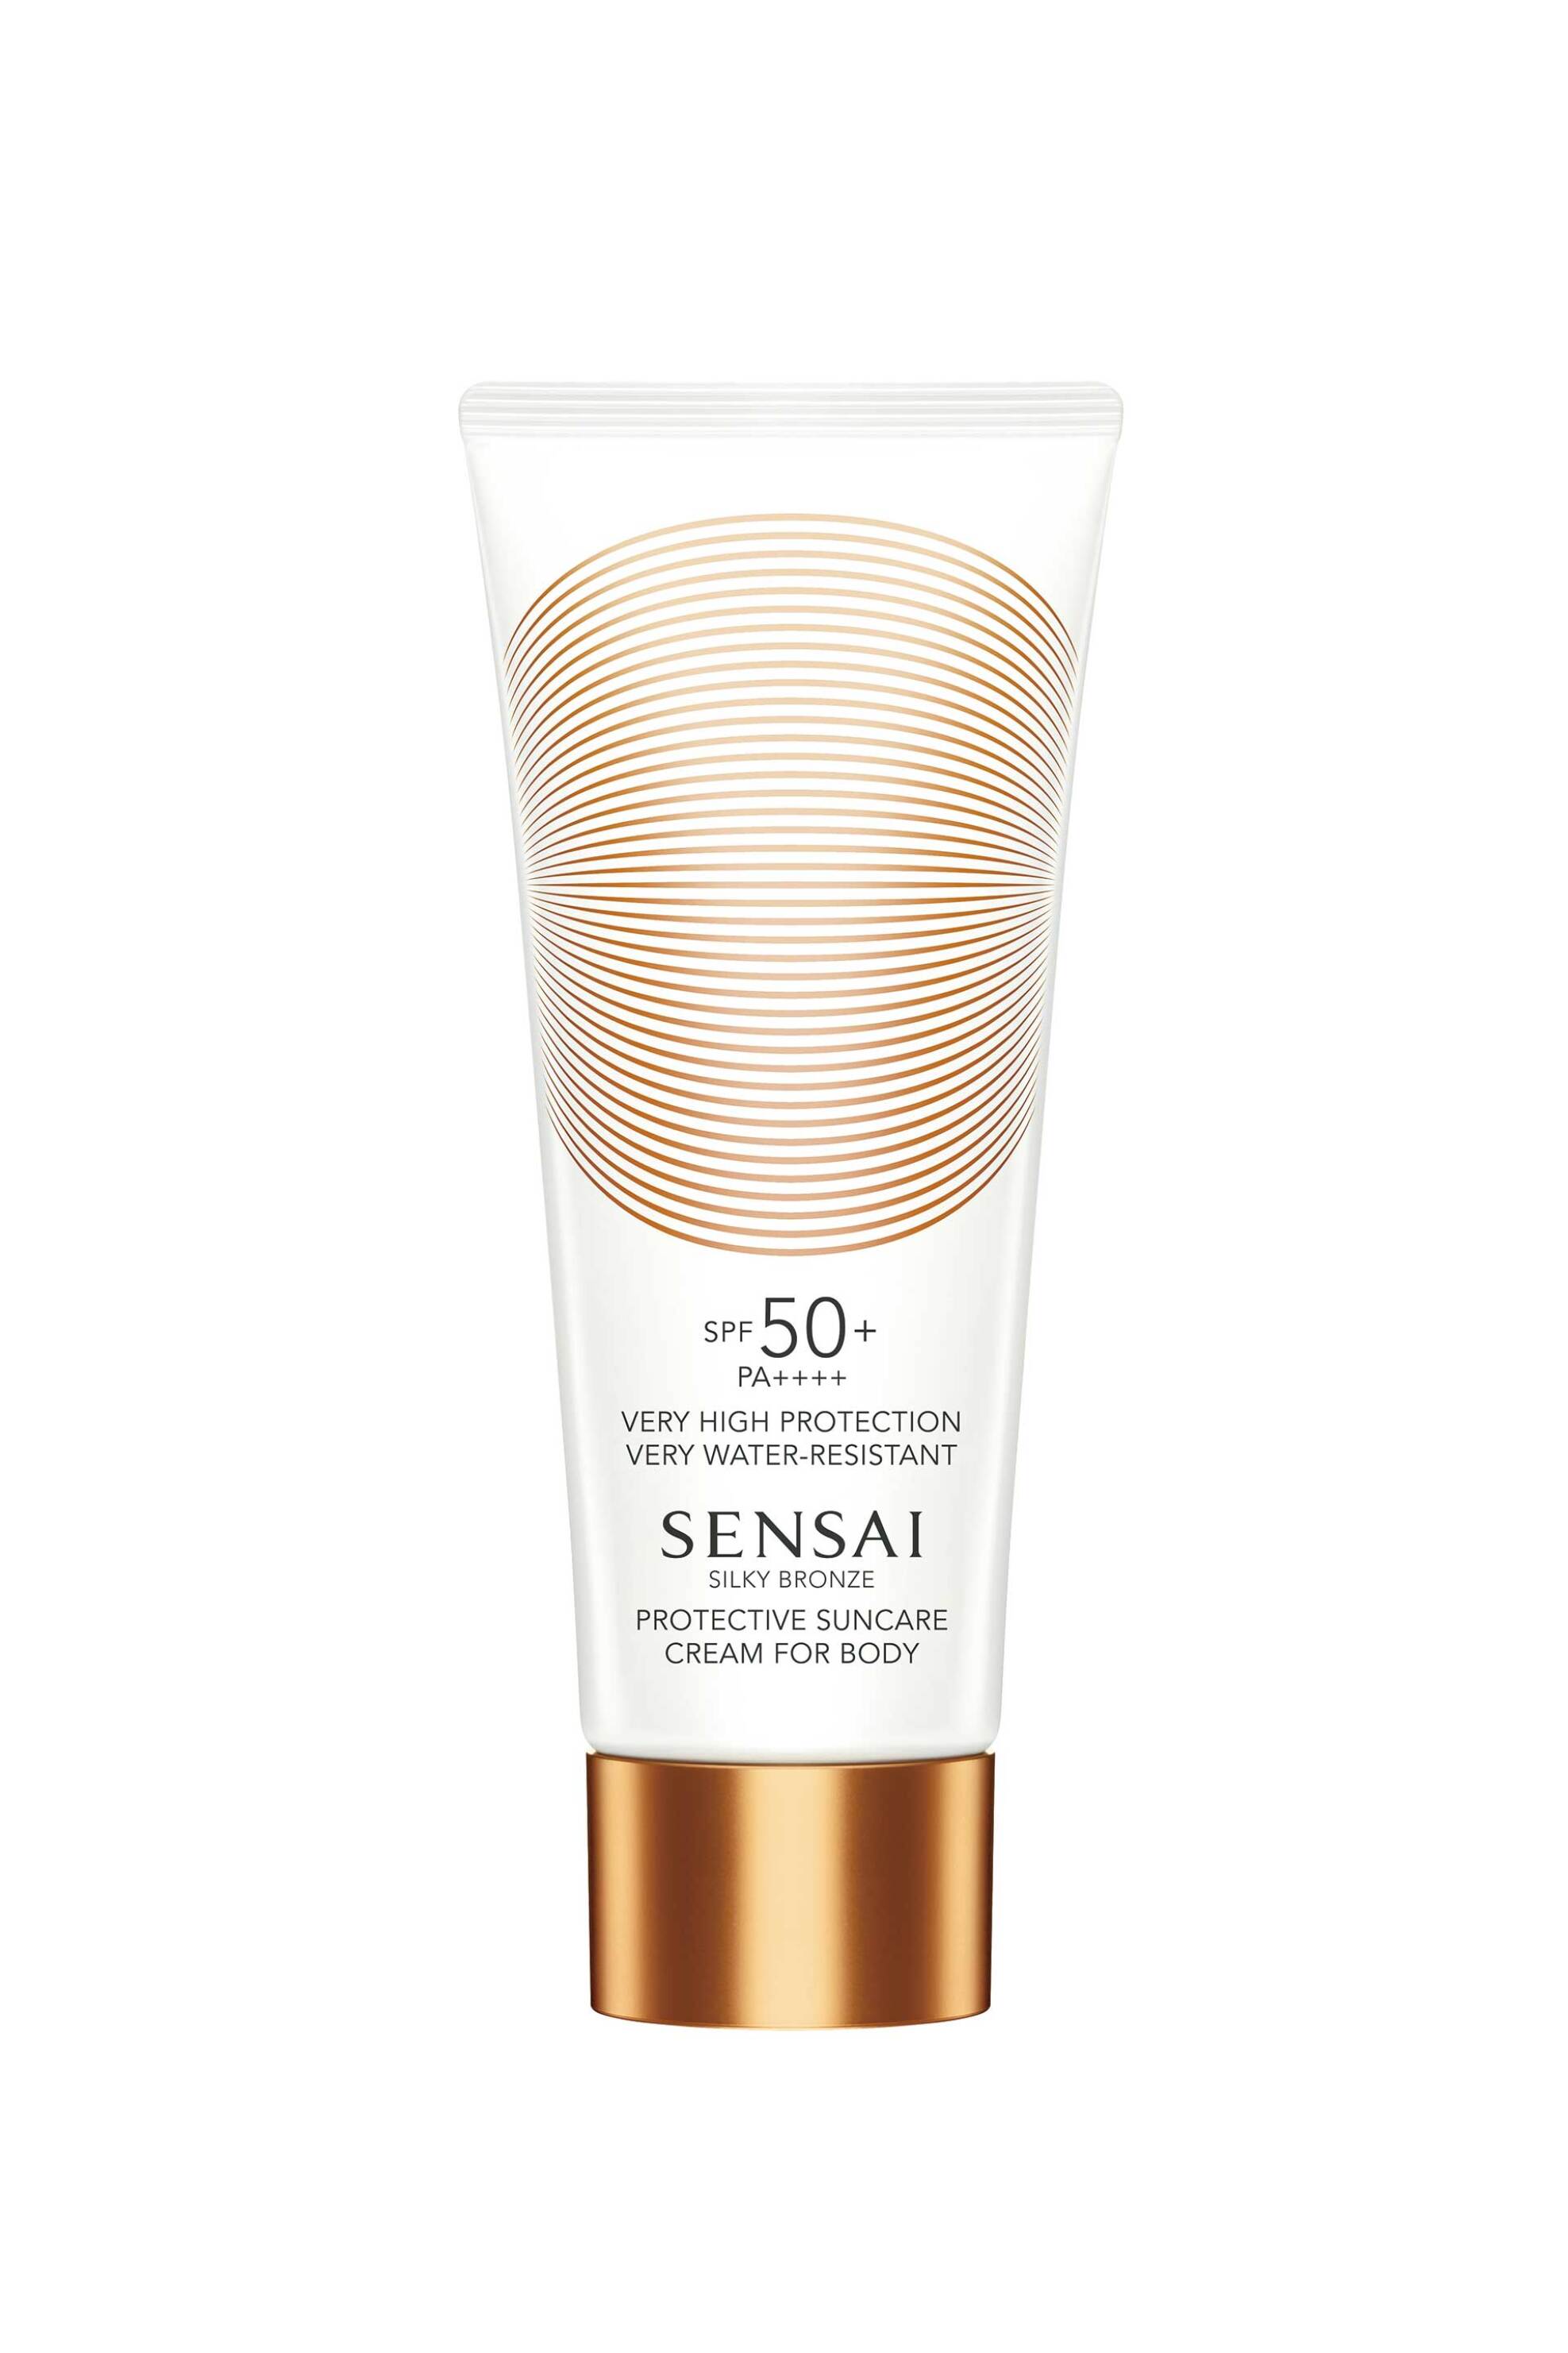 Προϊόντα Ομορφιάς > Αντηλιακά > Αντηλιακά Σώματος Sensai Silky Bronze Protective Suncare Cream For Body SPF50+ 150 ml - 52551